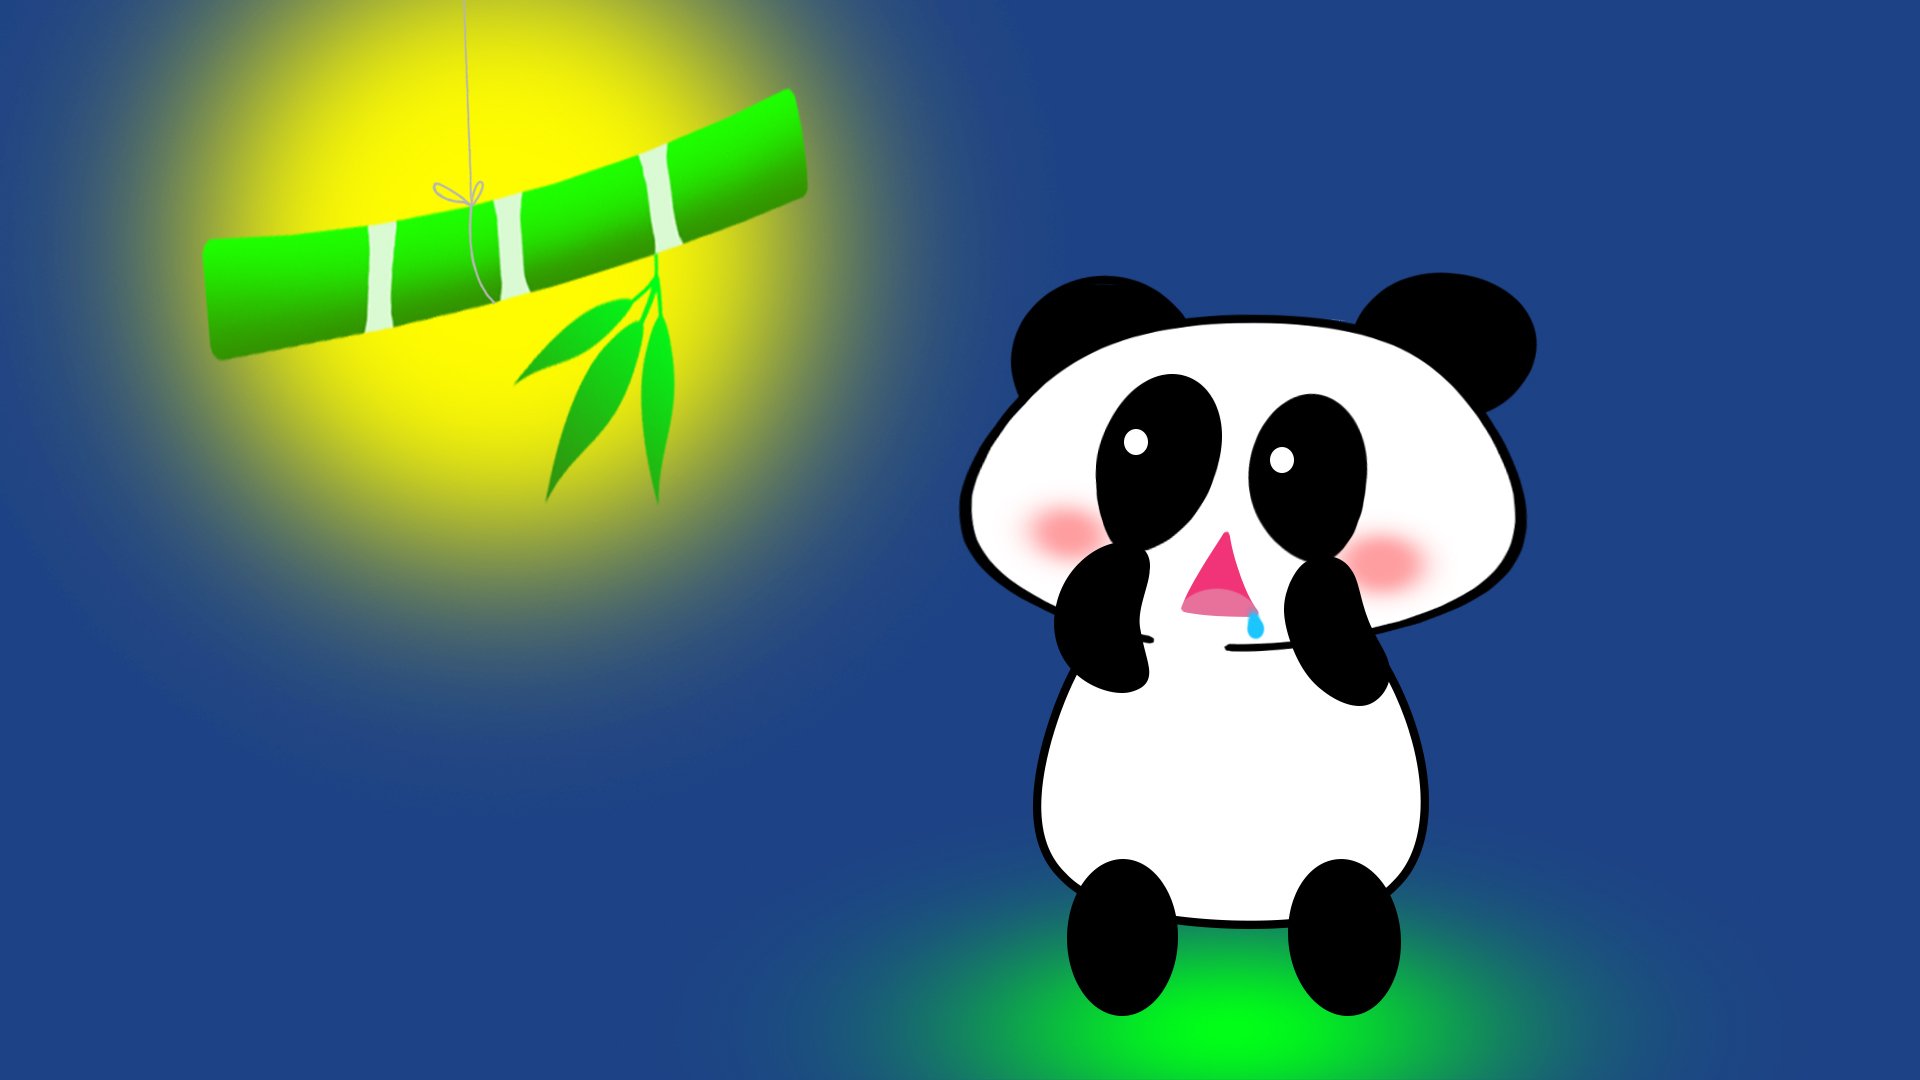 Hungry Panda by Sh4rkCC